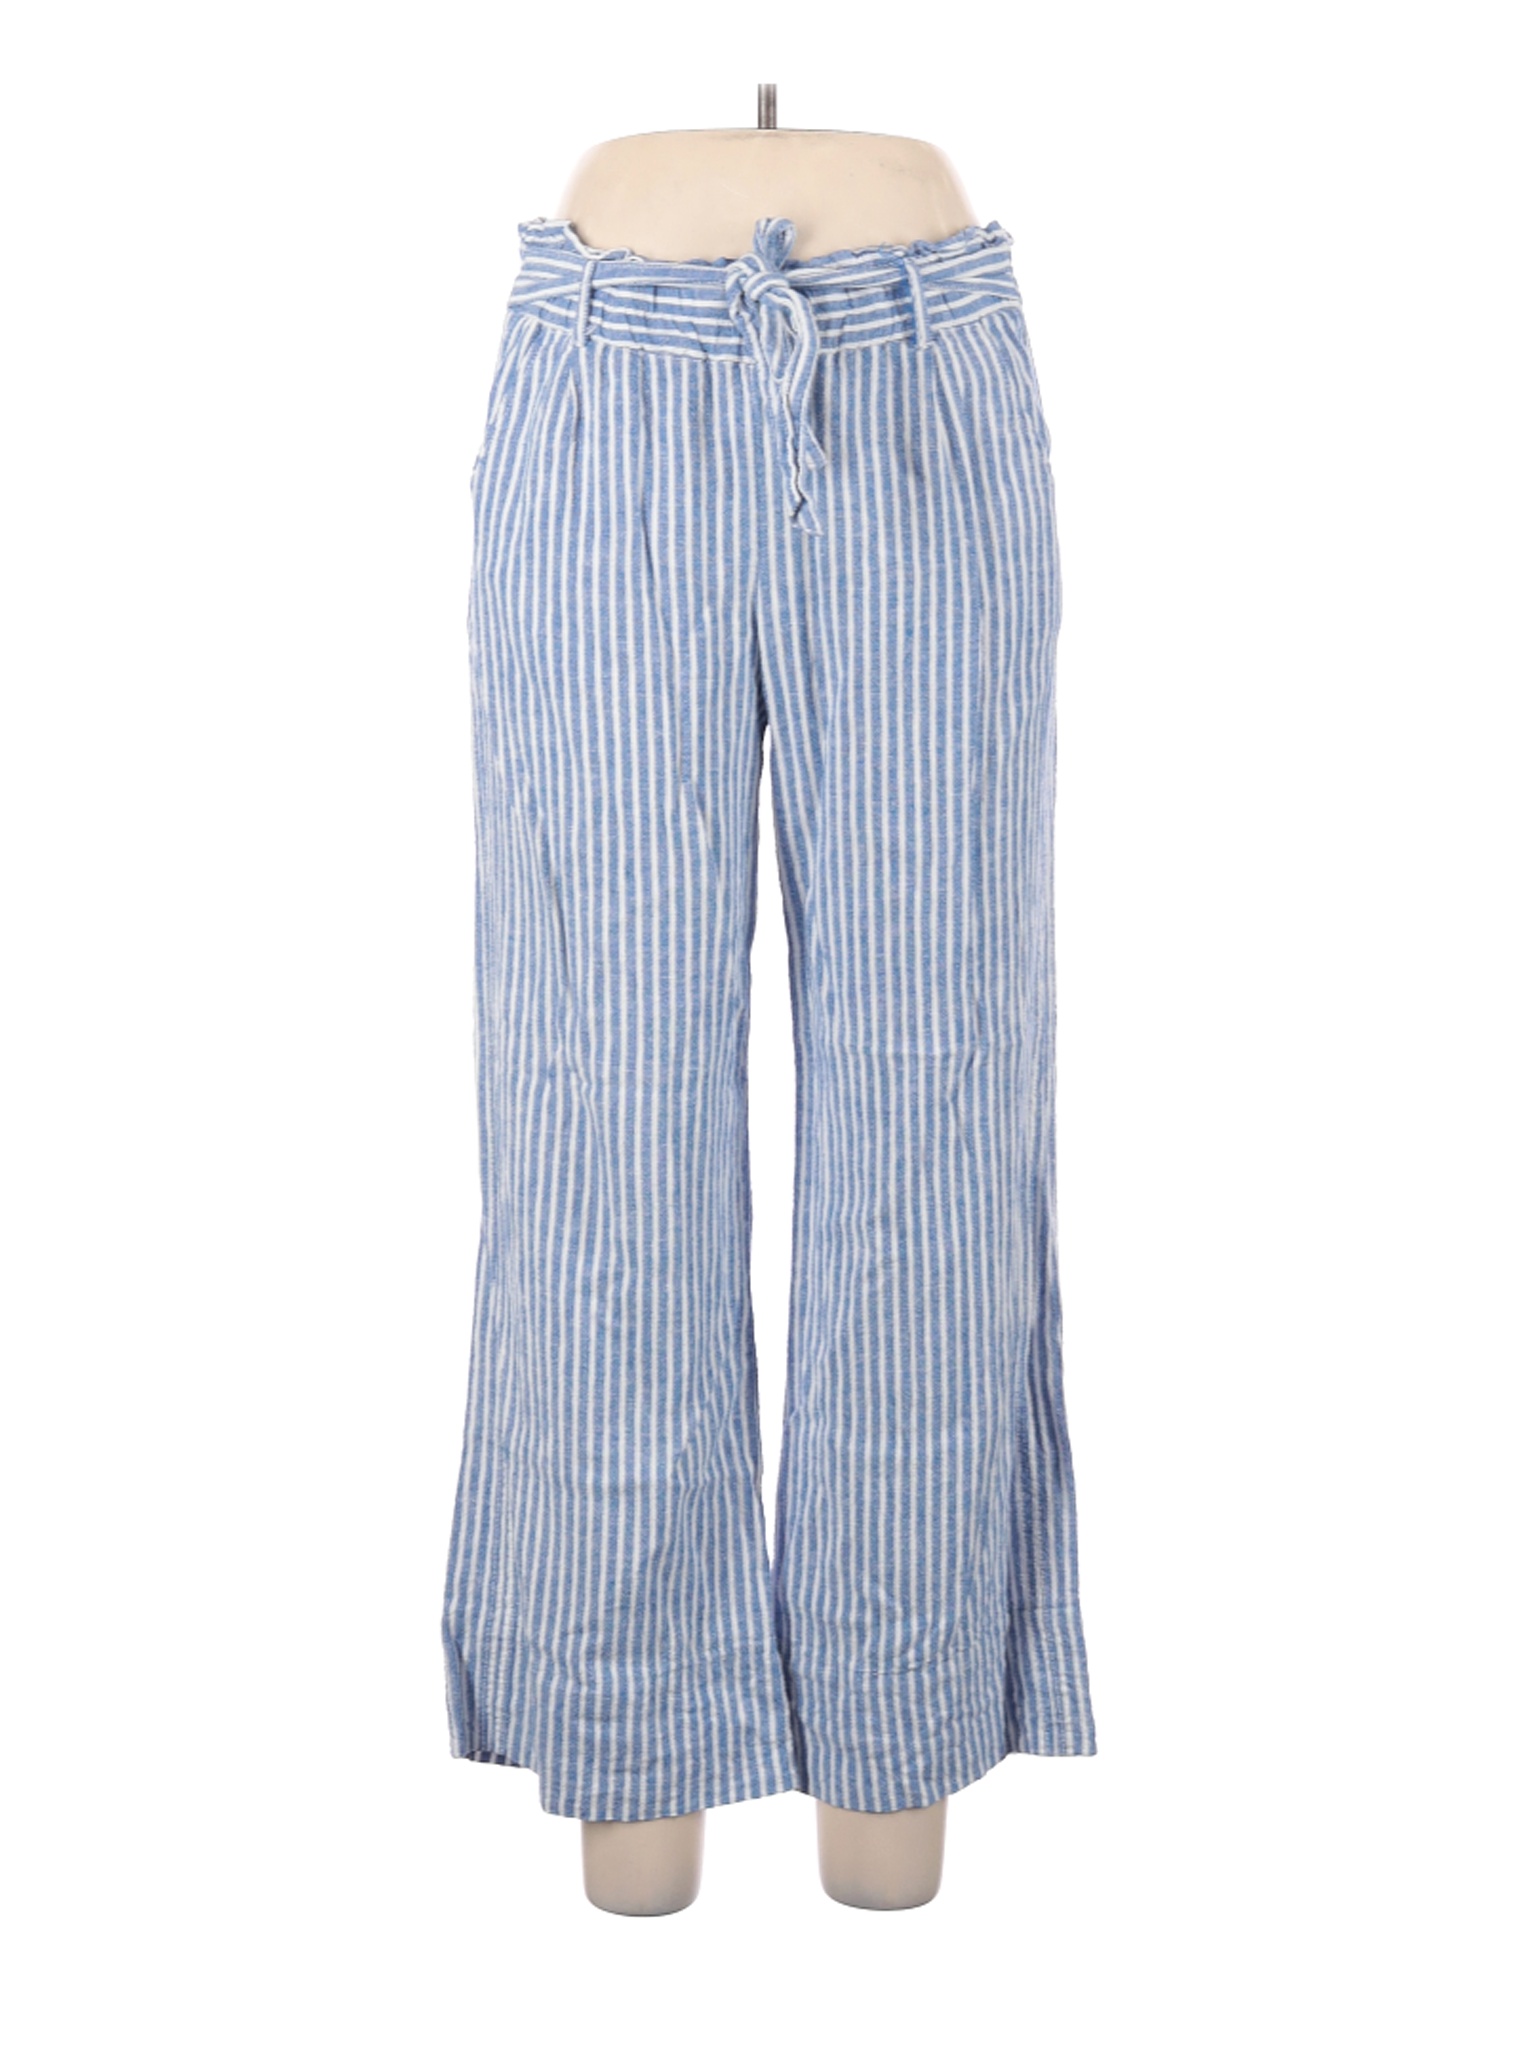 Jolt Women Blue Casual Pants L | eBay